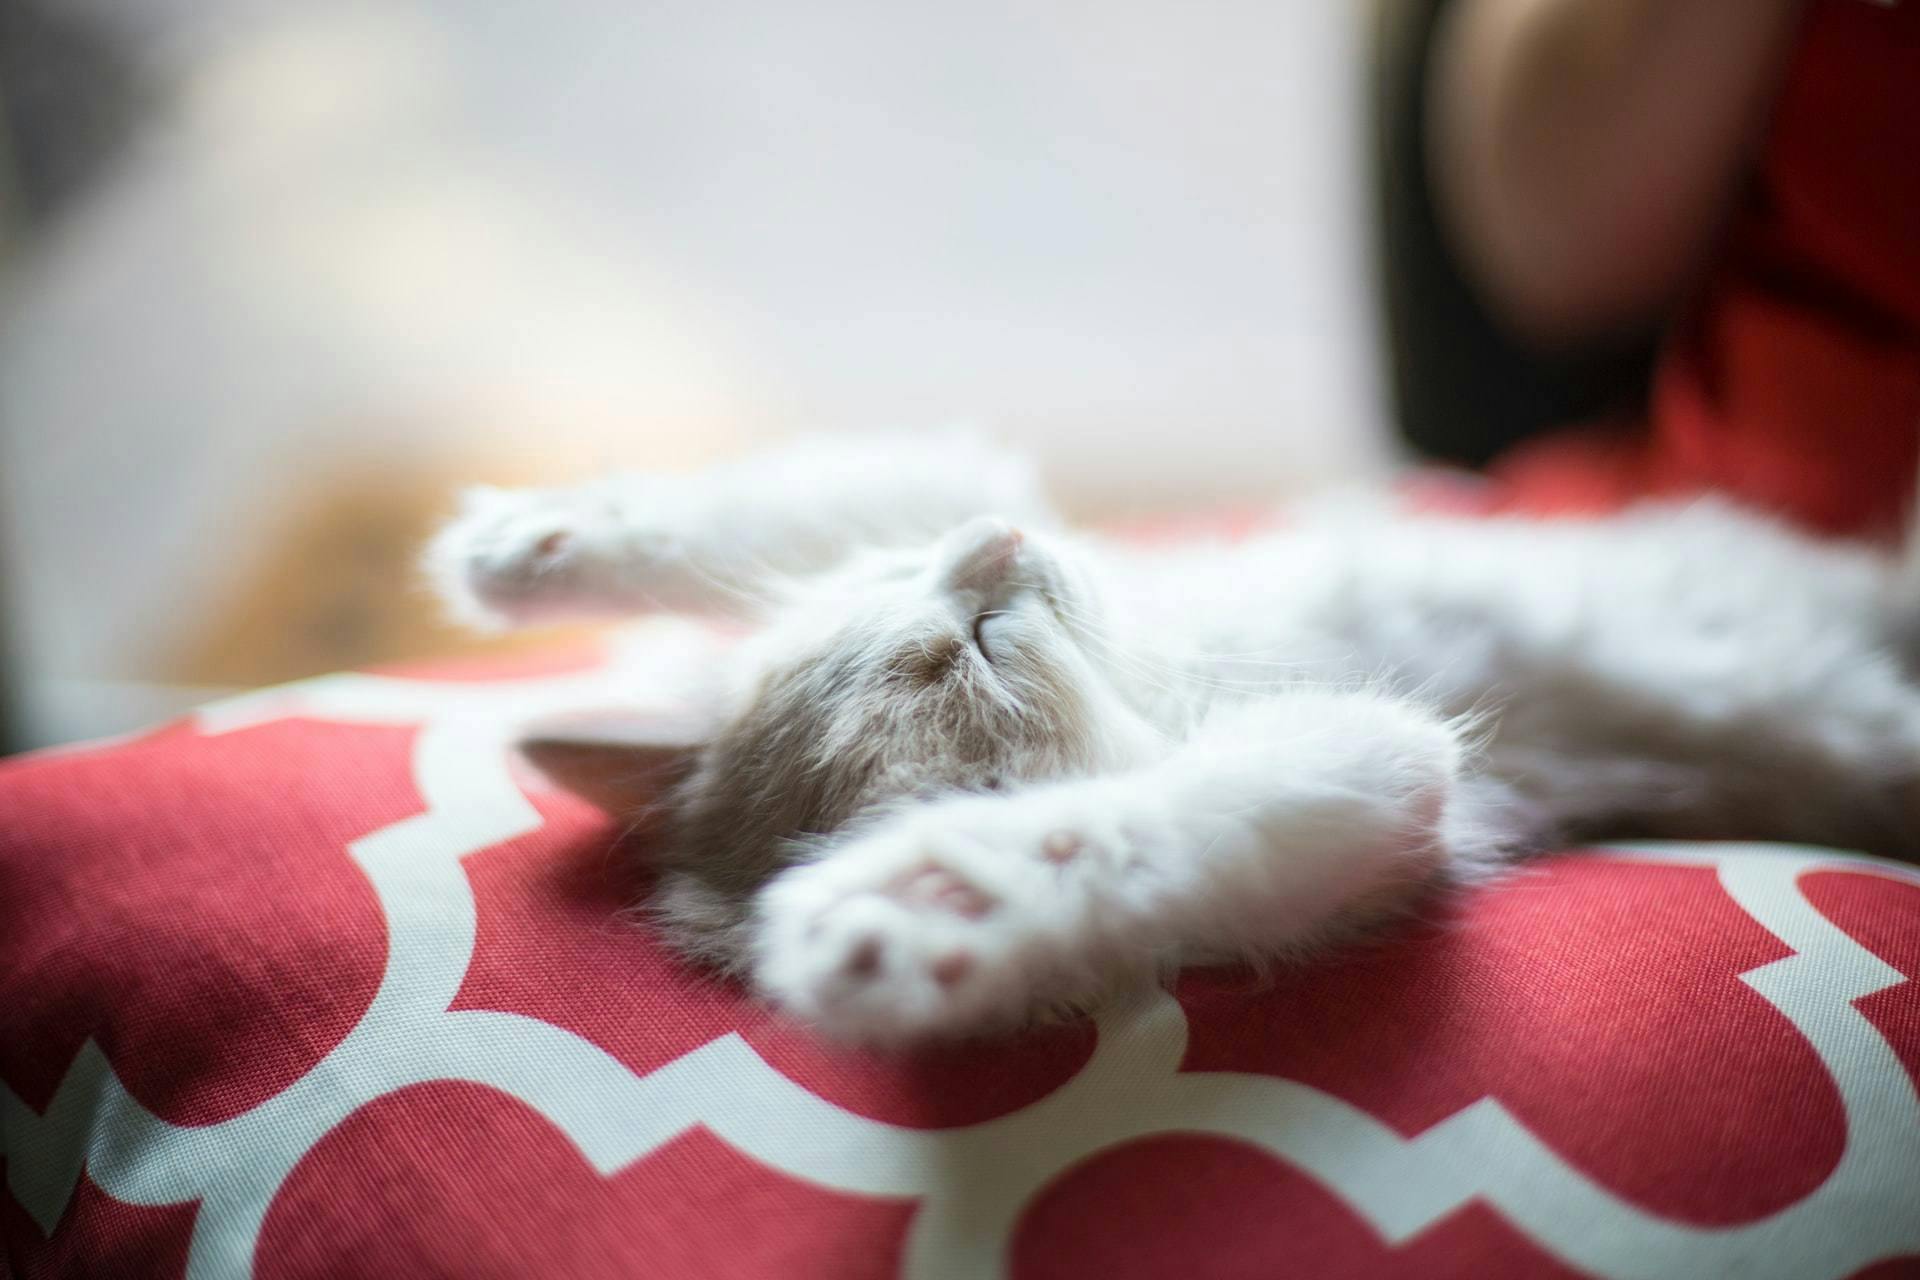 Kittens sleep sporadically - how long do cats sleep 